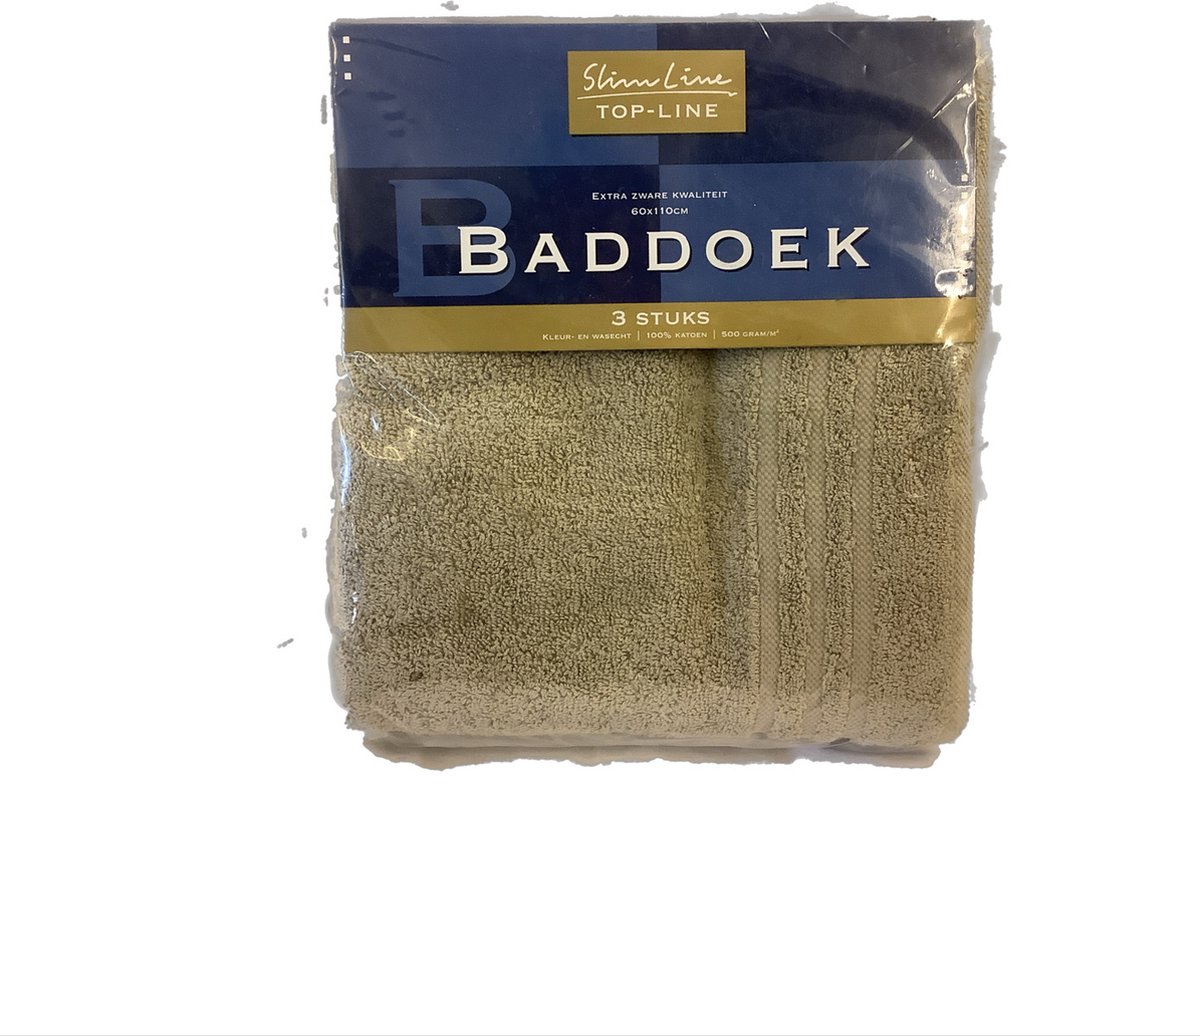 Slimline baddoek zand 3 stuks in pak 60x110cm